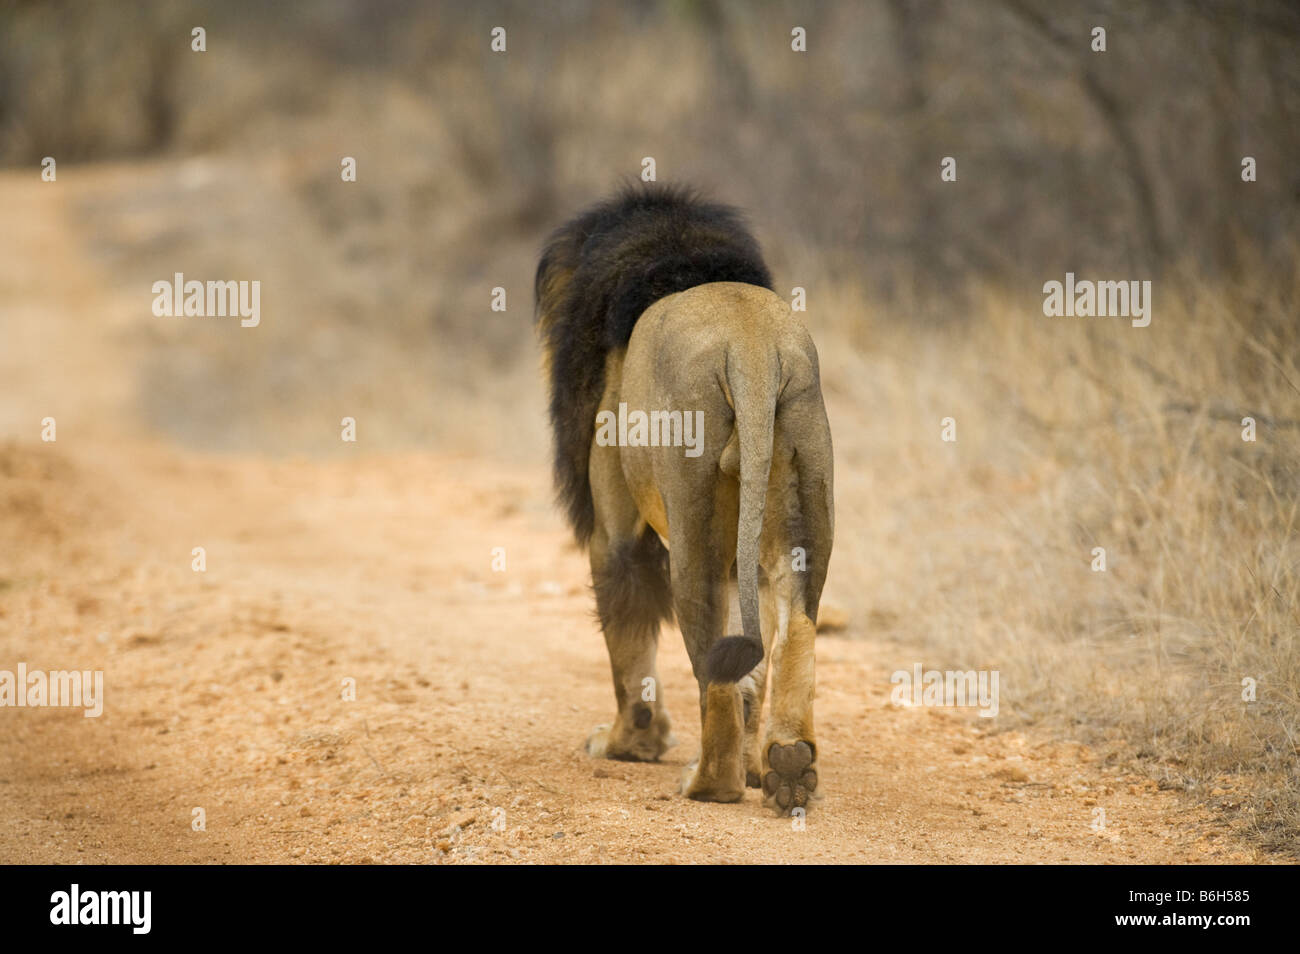 Sauvages de la faune mâle lion s'en allant de l'empreinte de pied arrière boule chemin panthera leon au sud-Afrika afrique du sud la poussière des forêts Banque D'Images